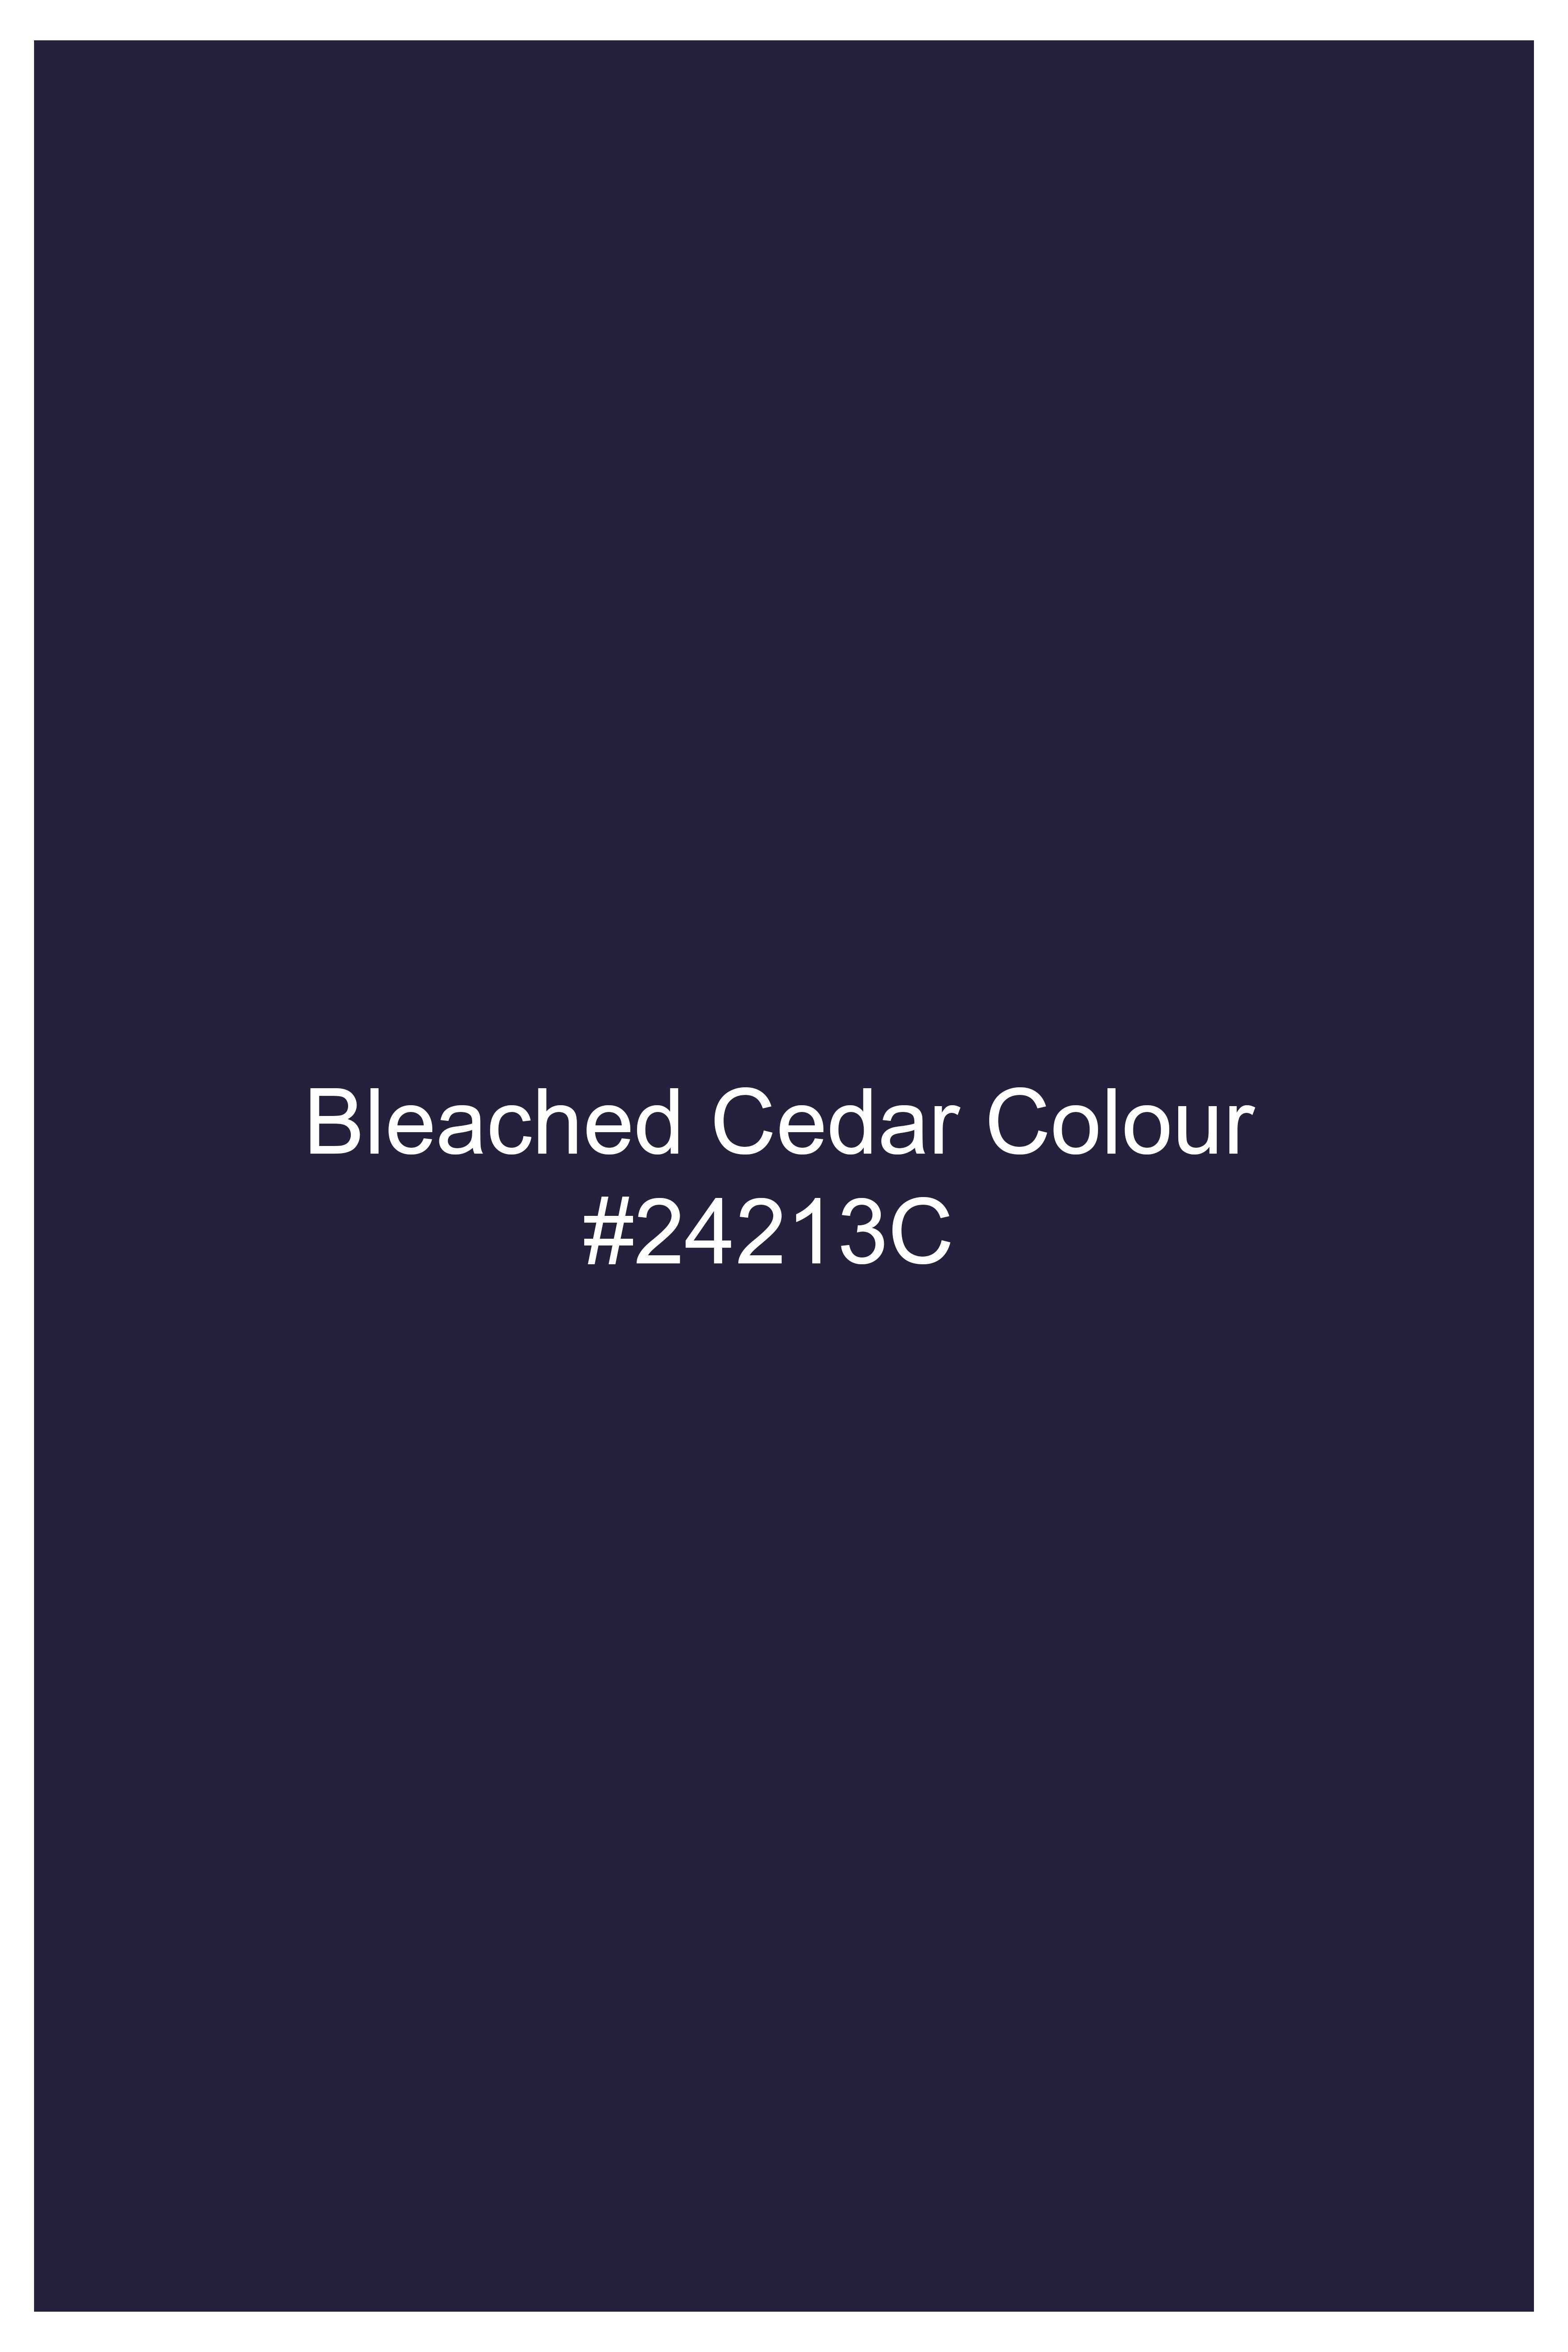 Bleached Cedar Blue Stretchable Wool rich Double Breasted Blazer BL2758-DB-36, BL2758-DB-38, BL2758-DB-40, BL2758-DB-42, BL2758-DB-44, BL2758-DB-46, BL2758-DB-48, BL2758-DB-50, BL2758-DB-52, BL2758-DB-54, BL2758-DB-56, BL2758-DB-58, BL2758-DB-60